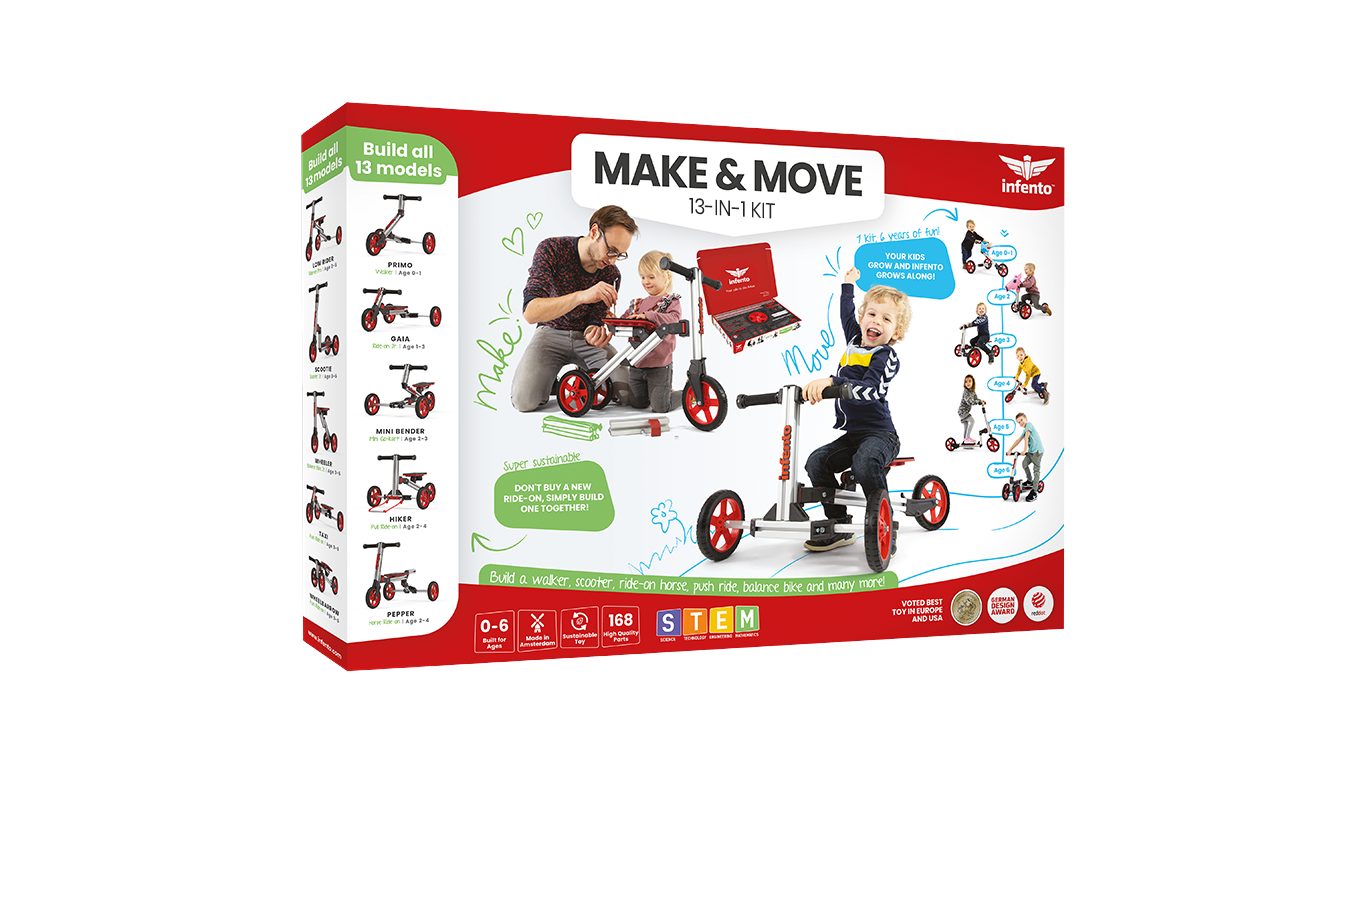 MAKE MOVE Infento & Fahrrad-Laufrad KIT